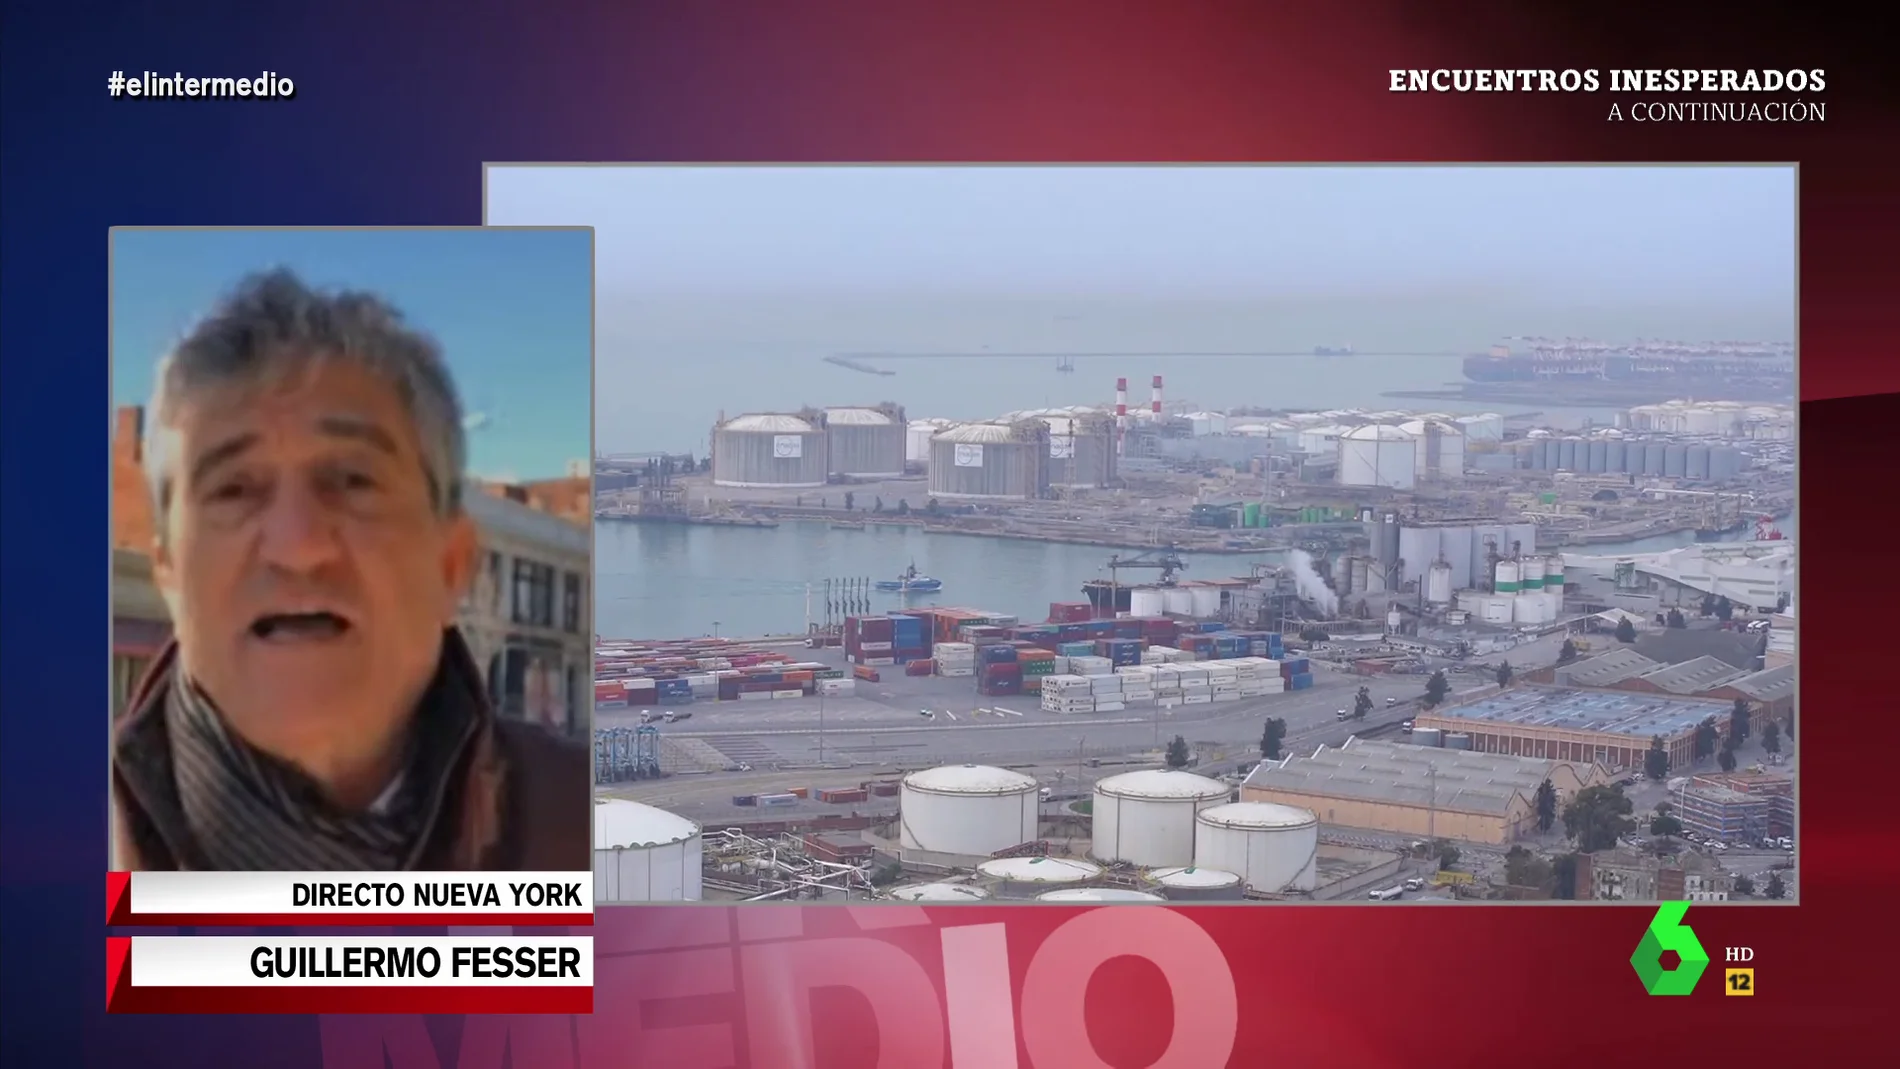 Guillermo Fesser desvela las "verdades descubiertas" tras convertirse EEUU en el máximo exportador de gas por la guerra en Ucrania